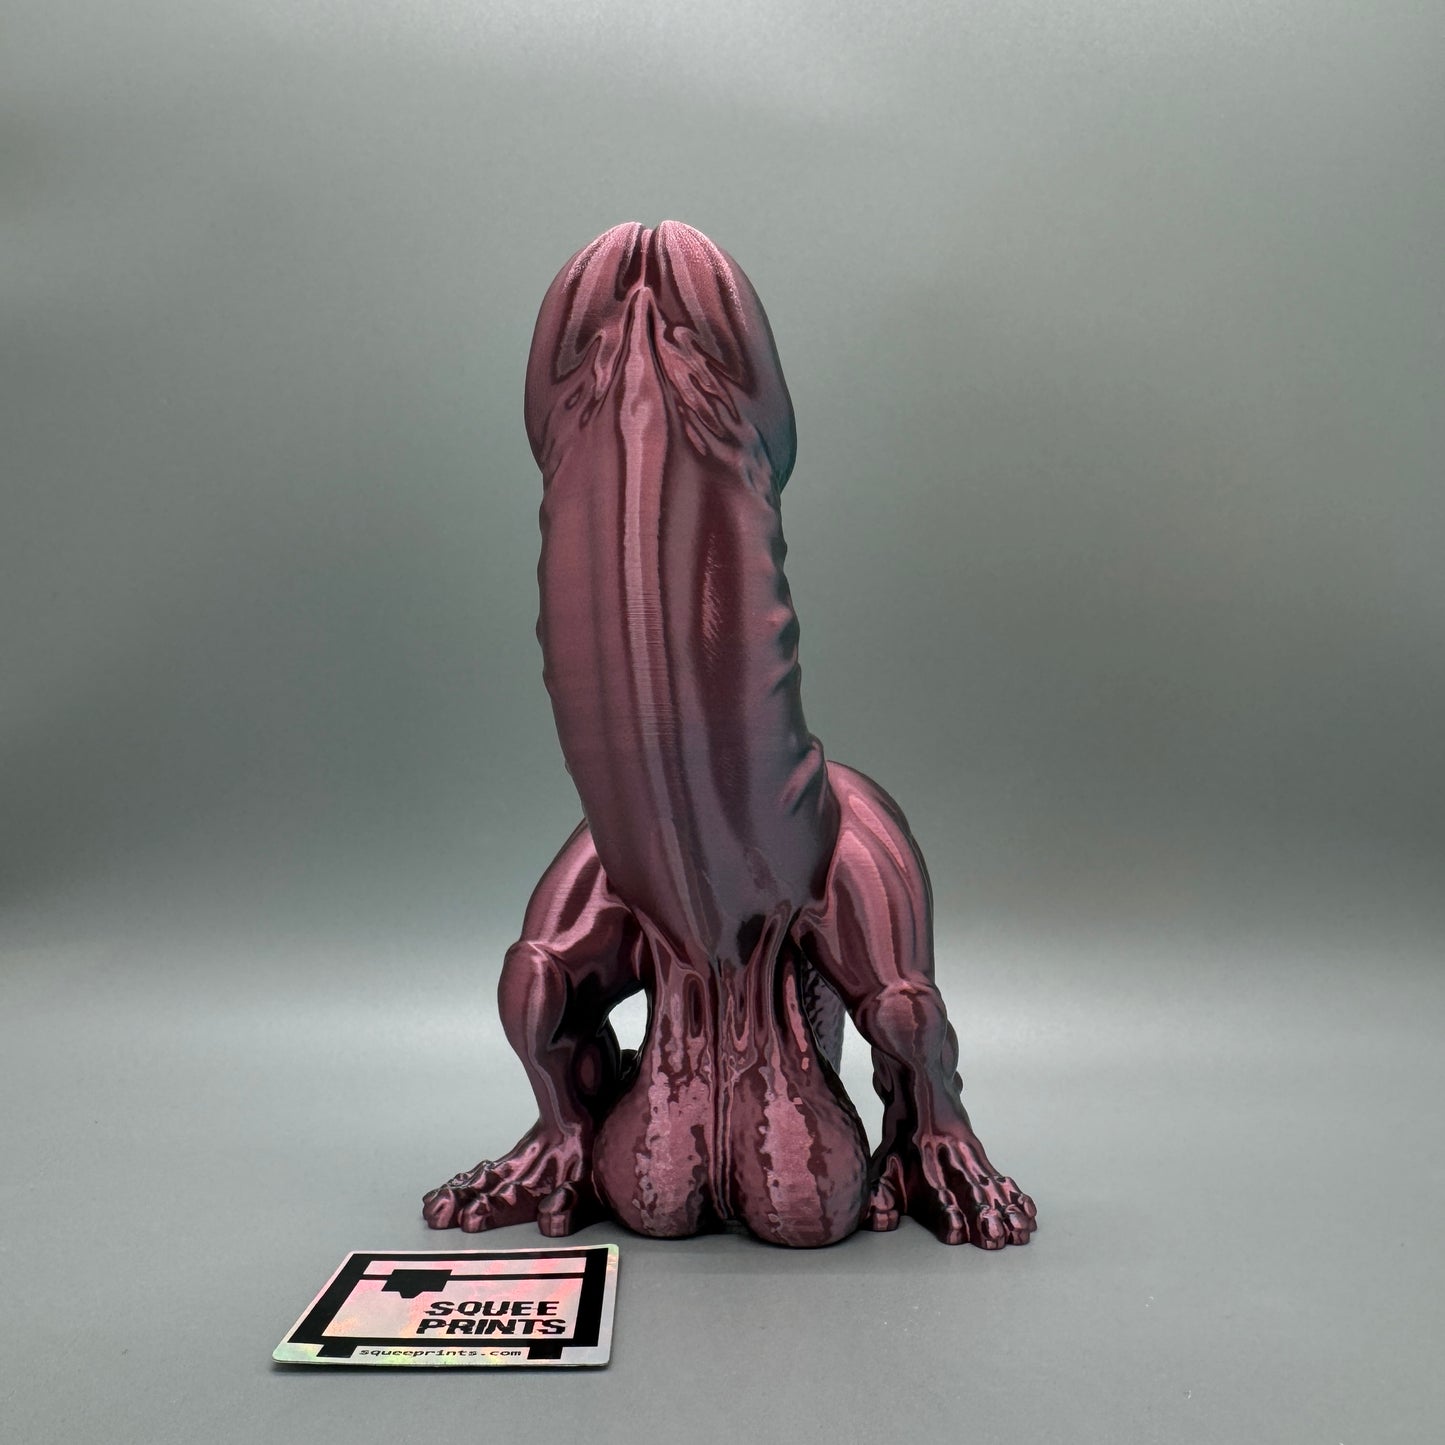 Cockasaurus | D-Rex | 3D Printed - Squee Prints